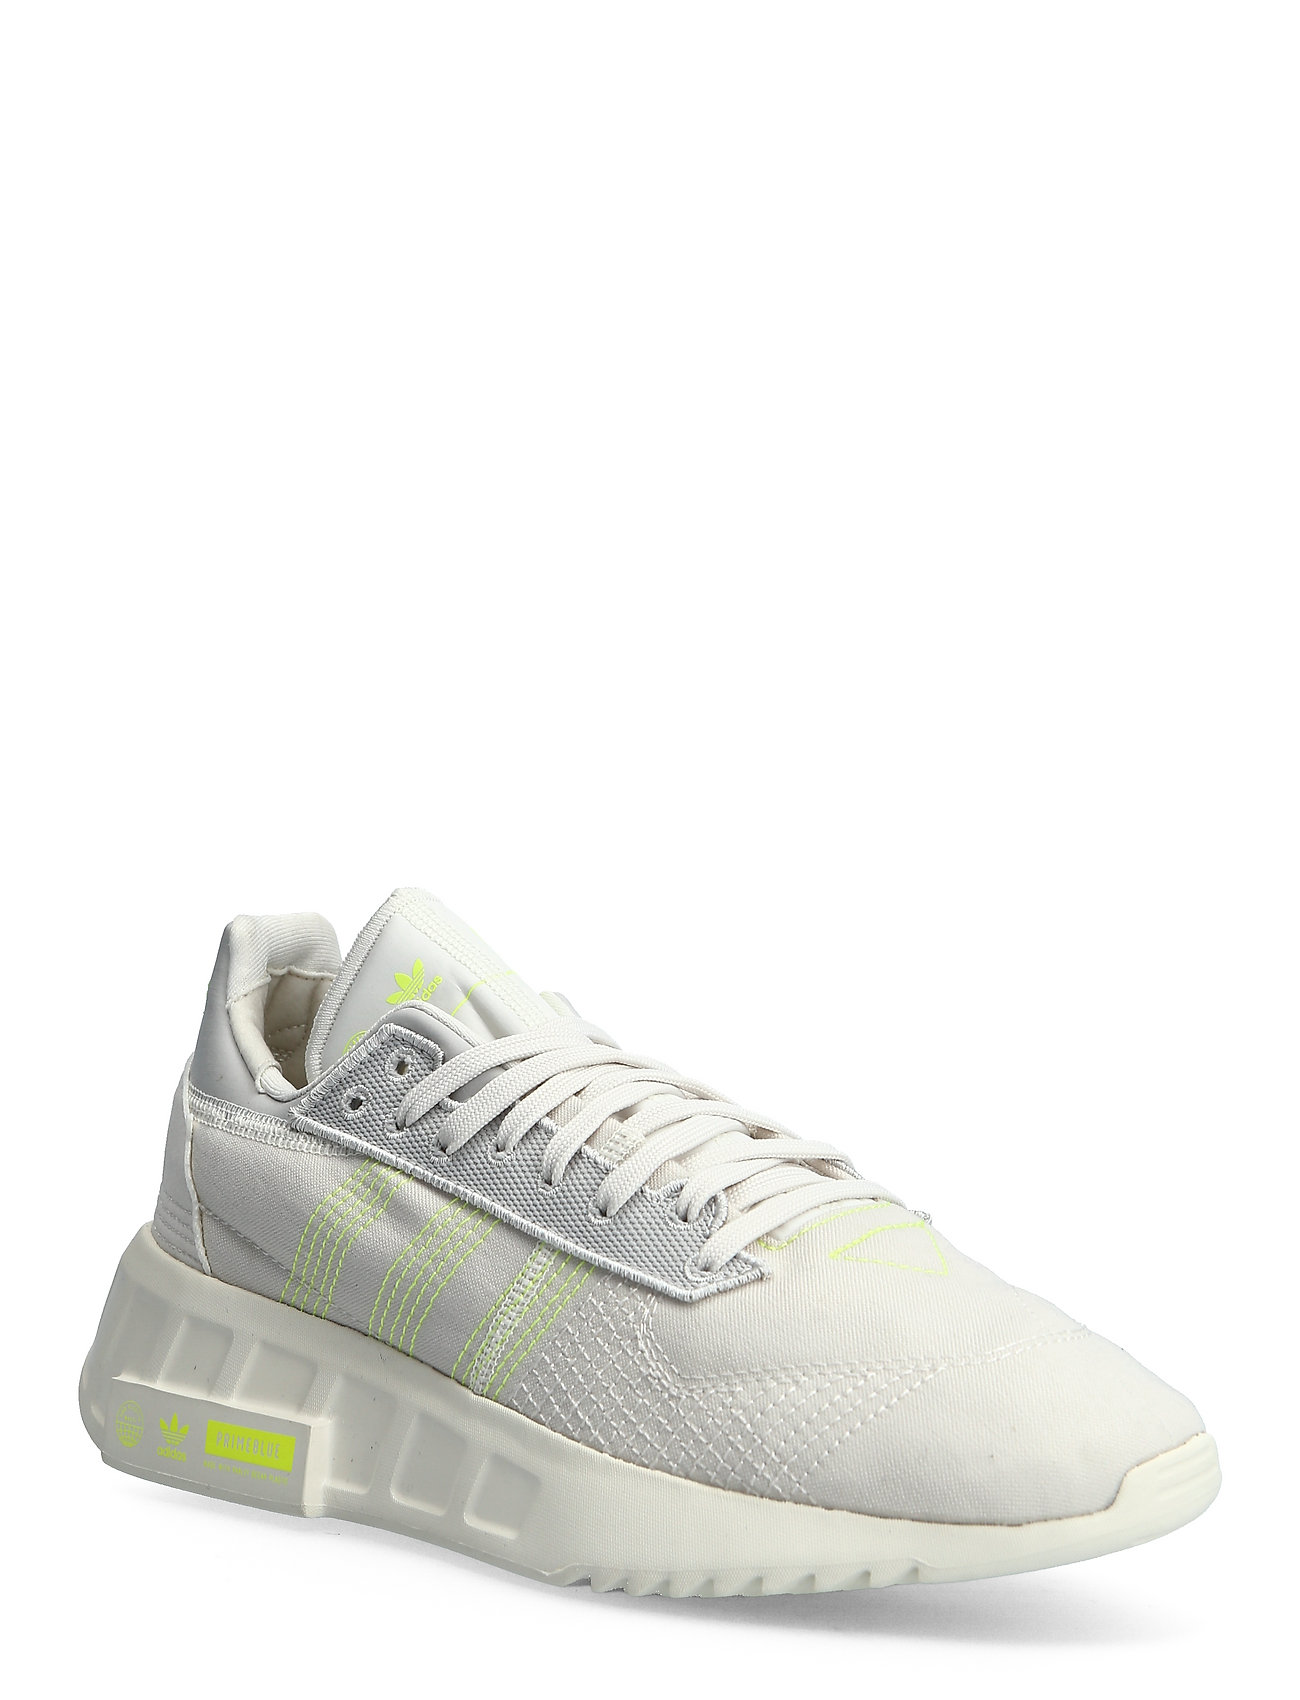 Geodiver Primeblue Matalavartiset Sneakerit Tennarit Valkoinen Adidas Originals, adidas Originals